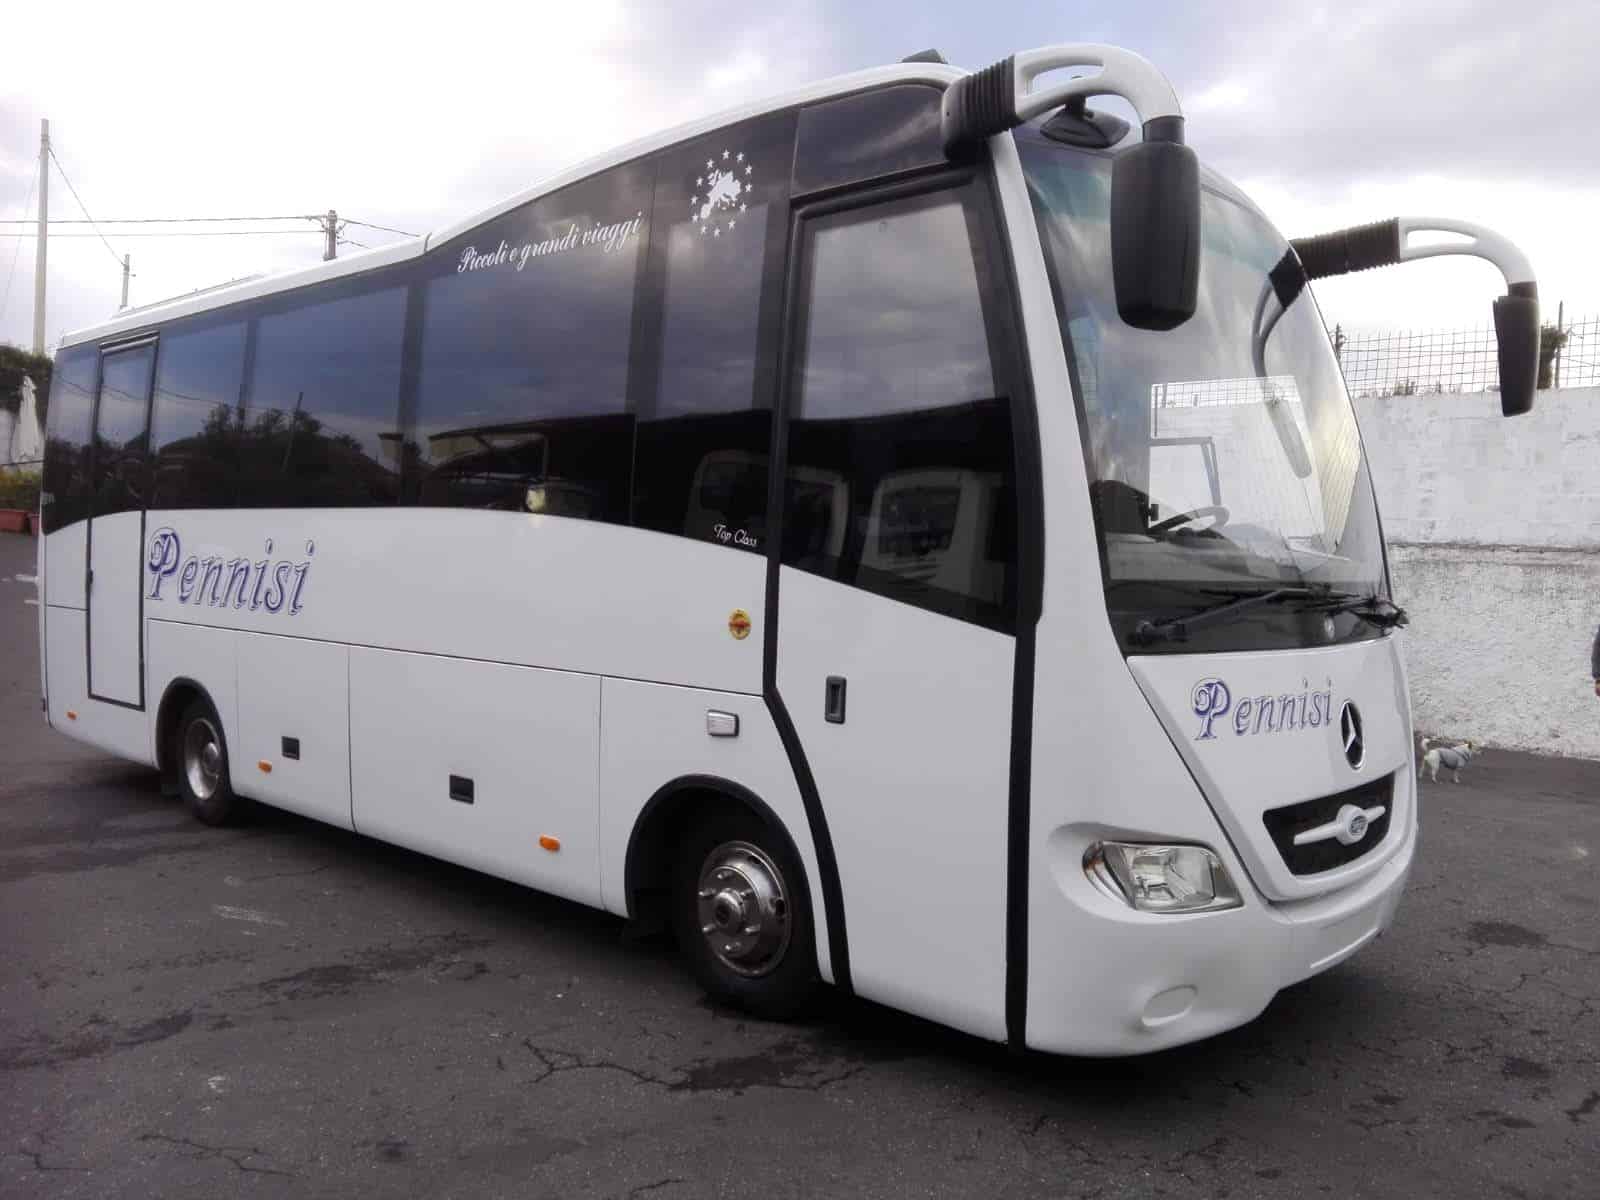 Minibus - Pennisi